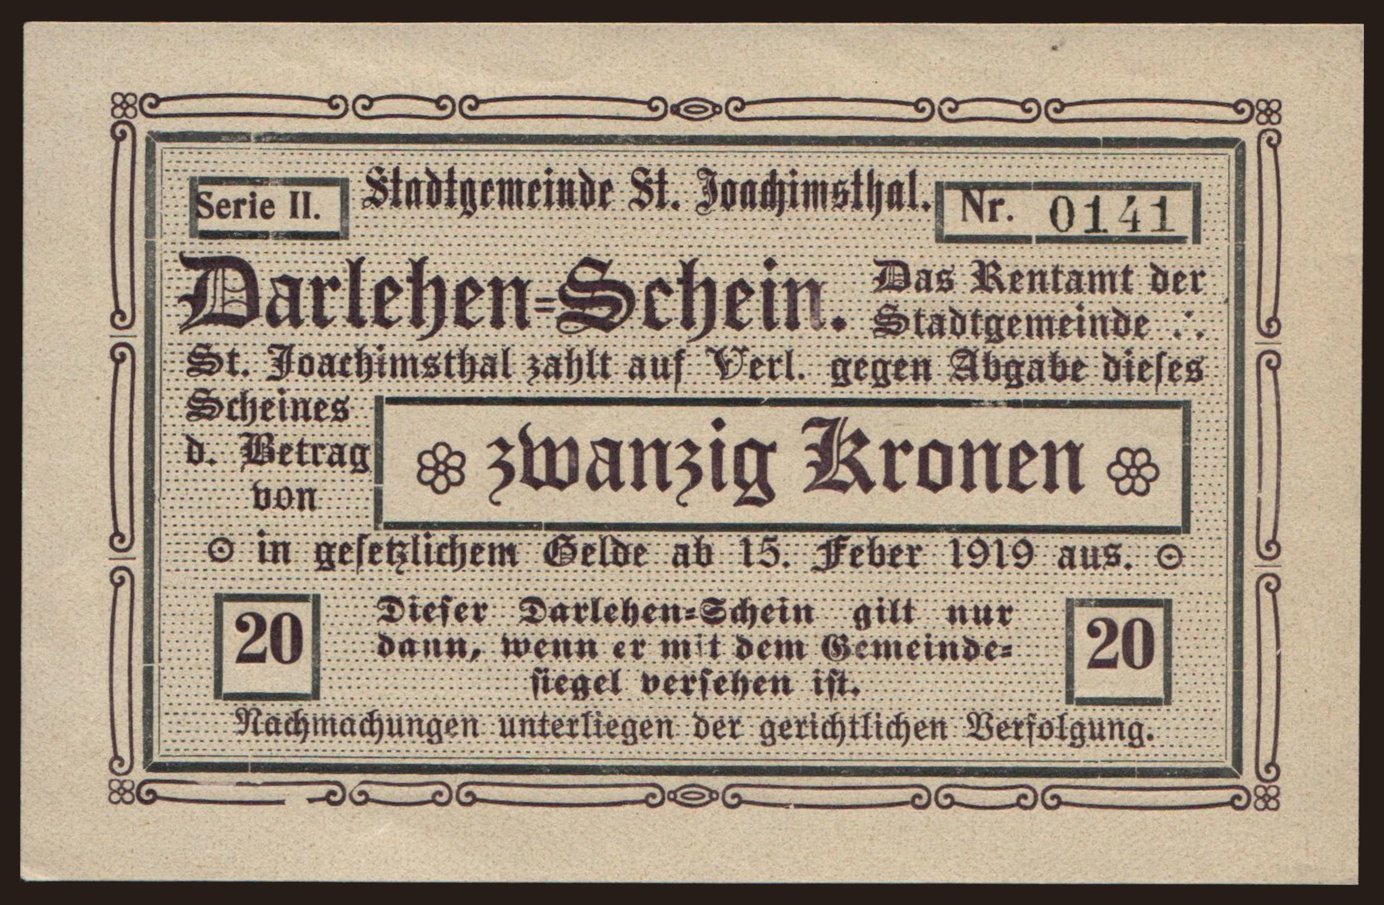 Sankt Joachimsthal, 20 Kronen, 1919